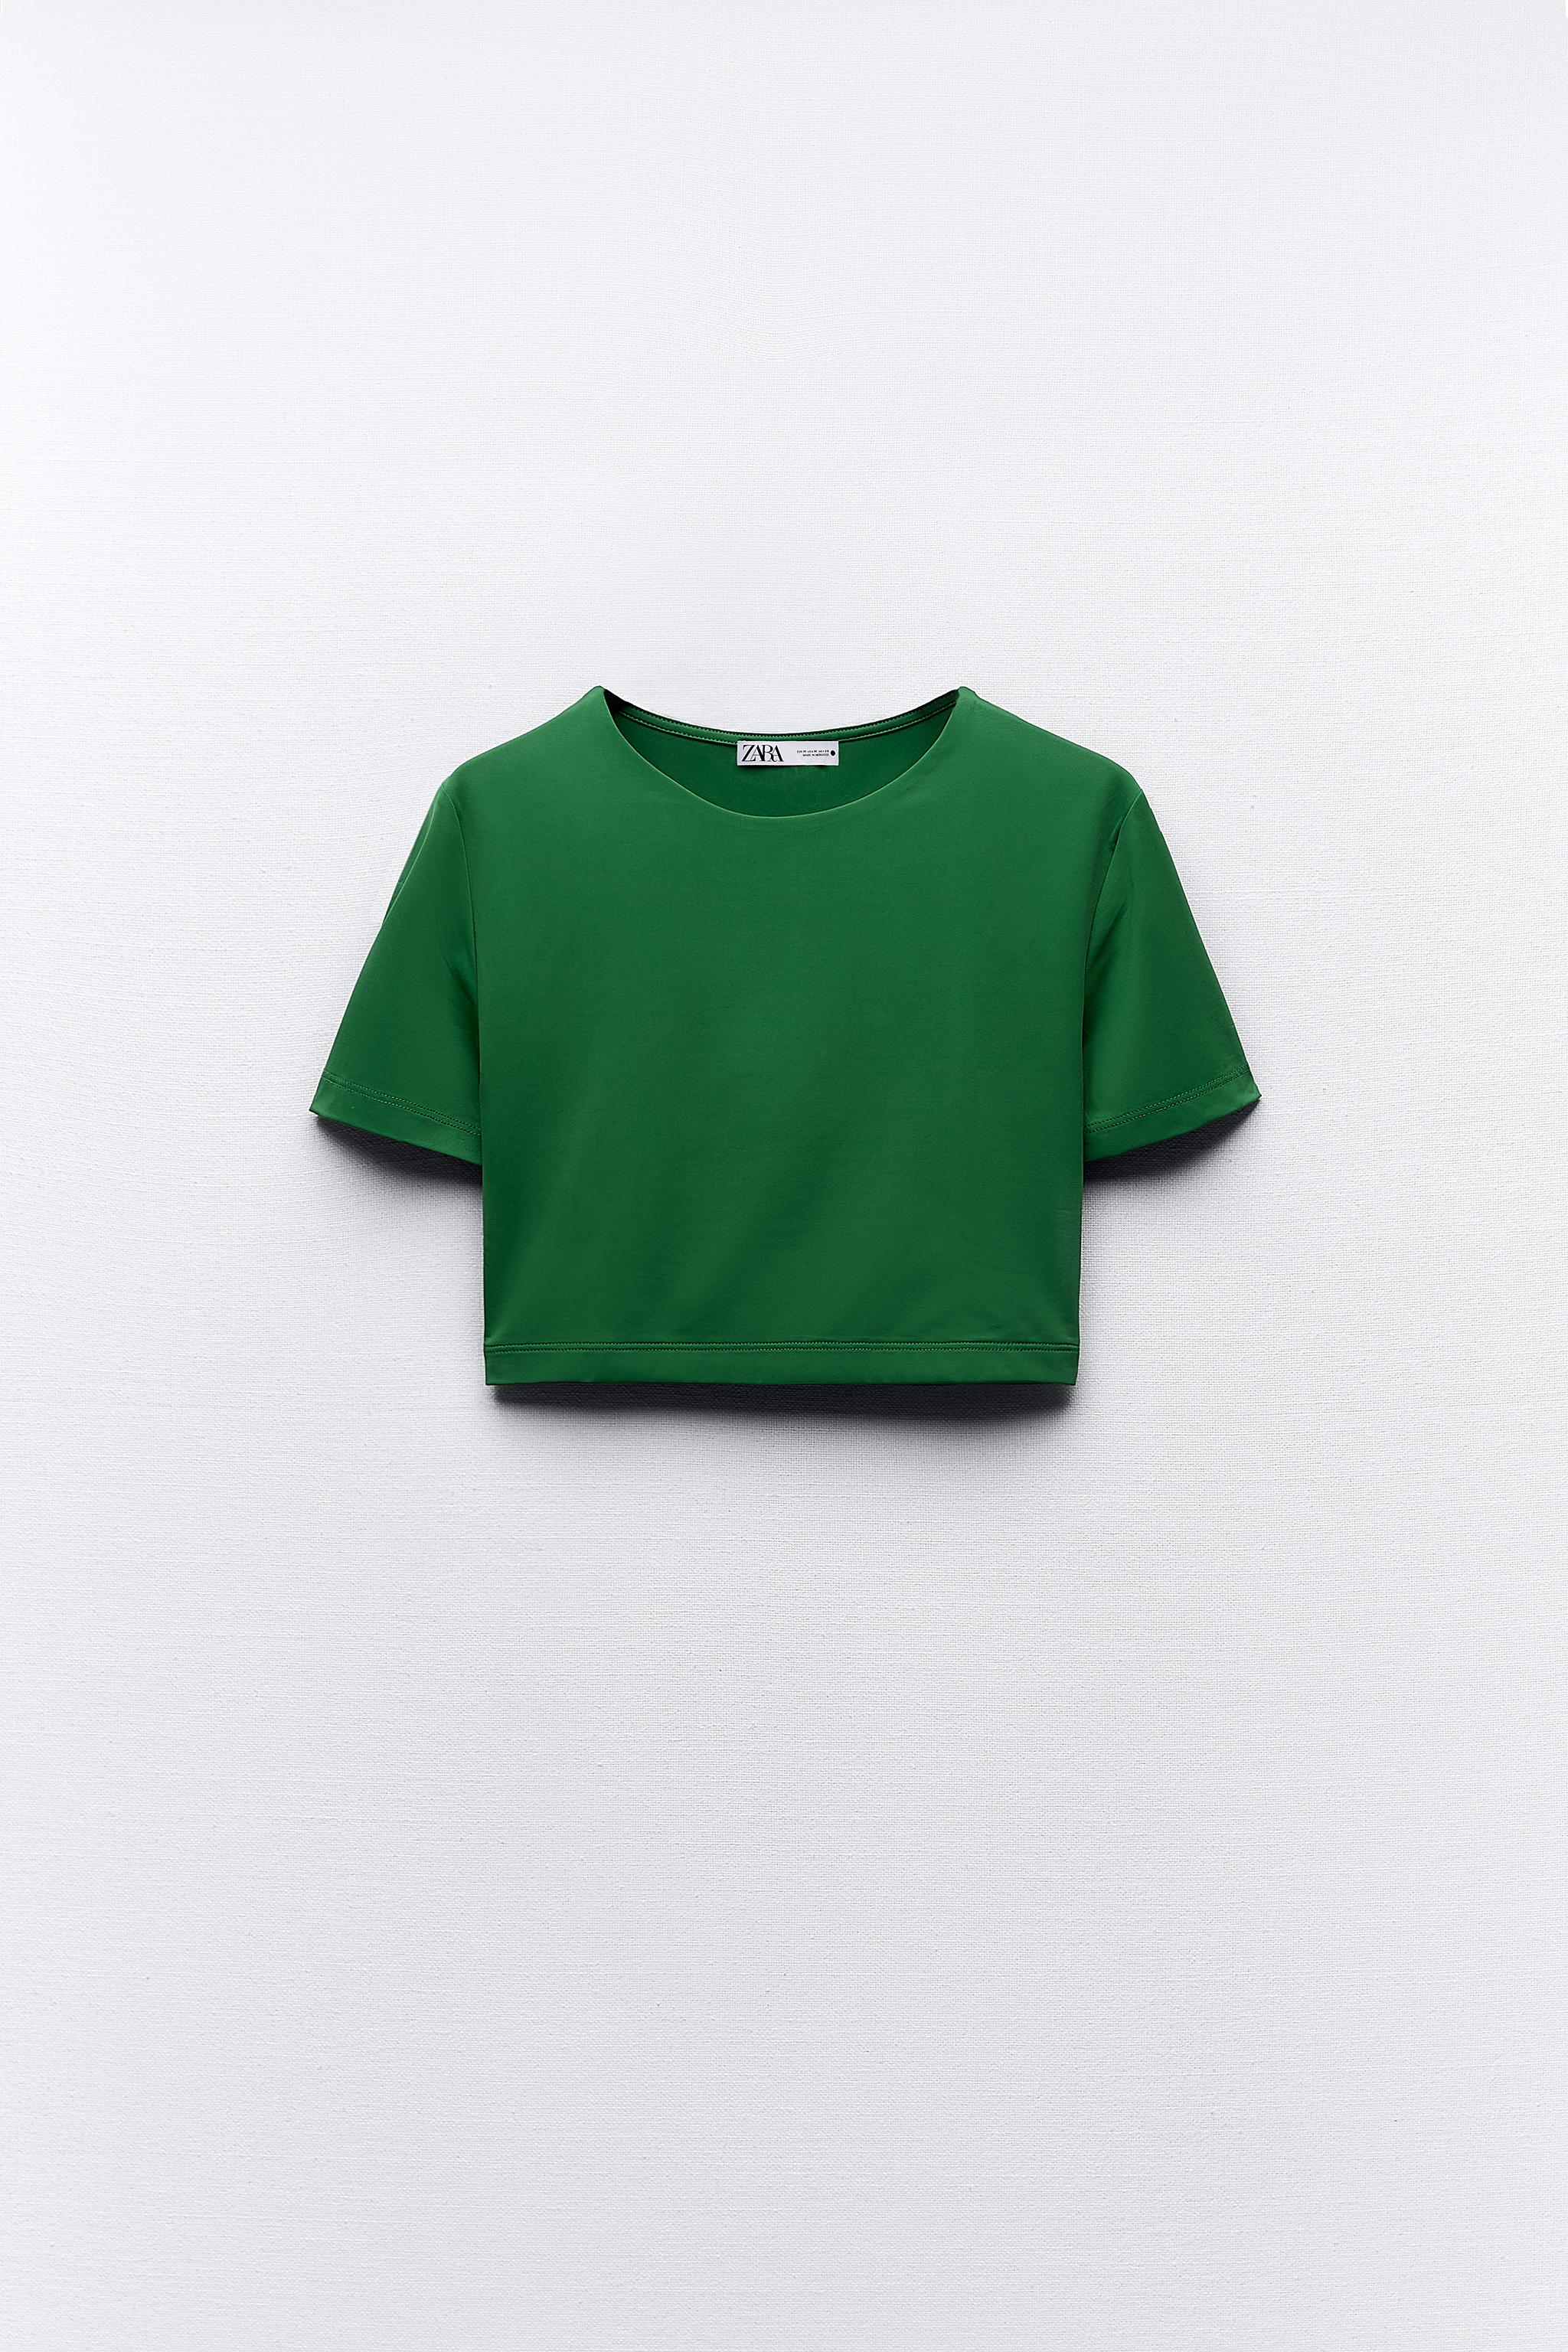 Zara Khaki Green Crop Top Medium - Large M L Limitless Contour